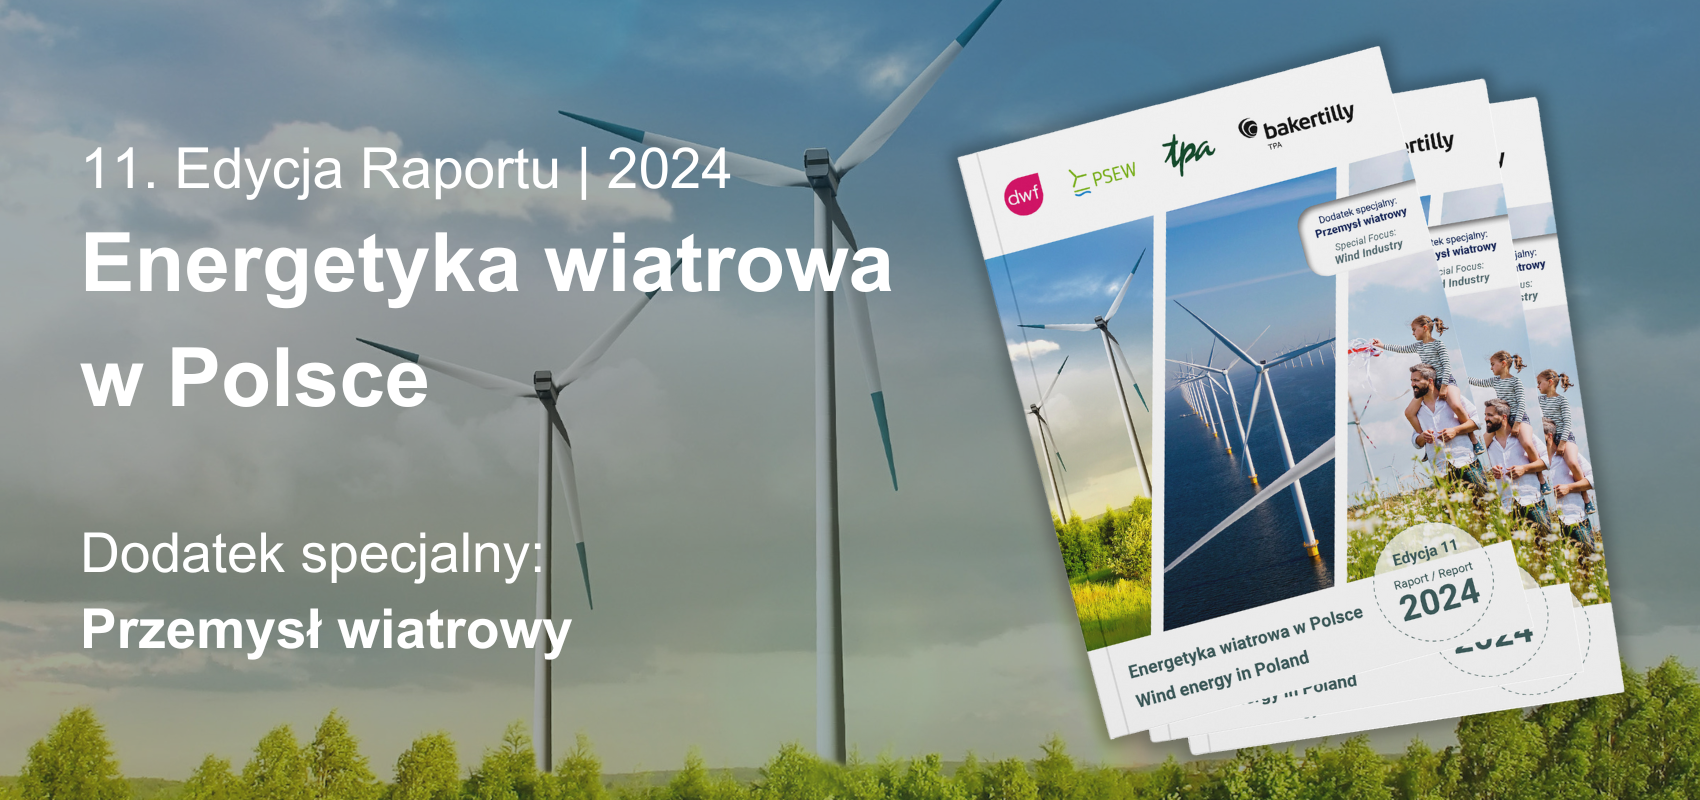 Raport Energetyka Wiatrowa w Polsce_edycja 2024, fot. Baker Tilly TPA